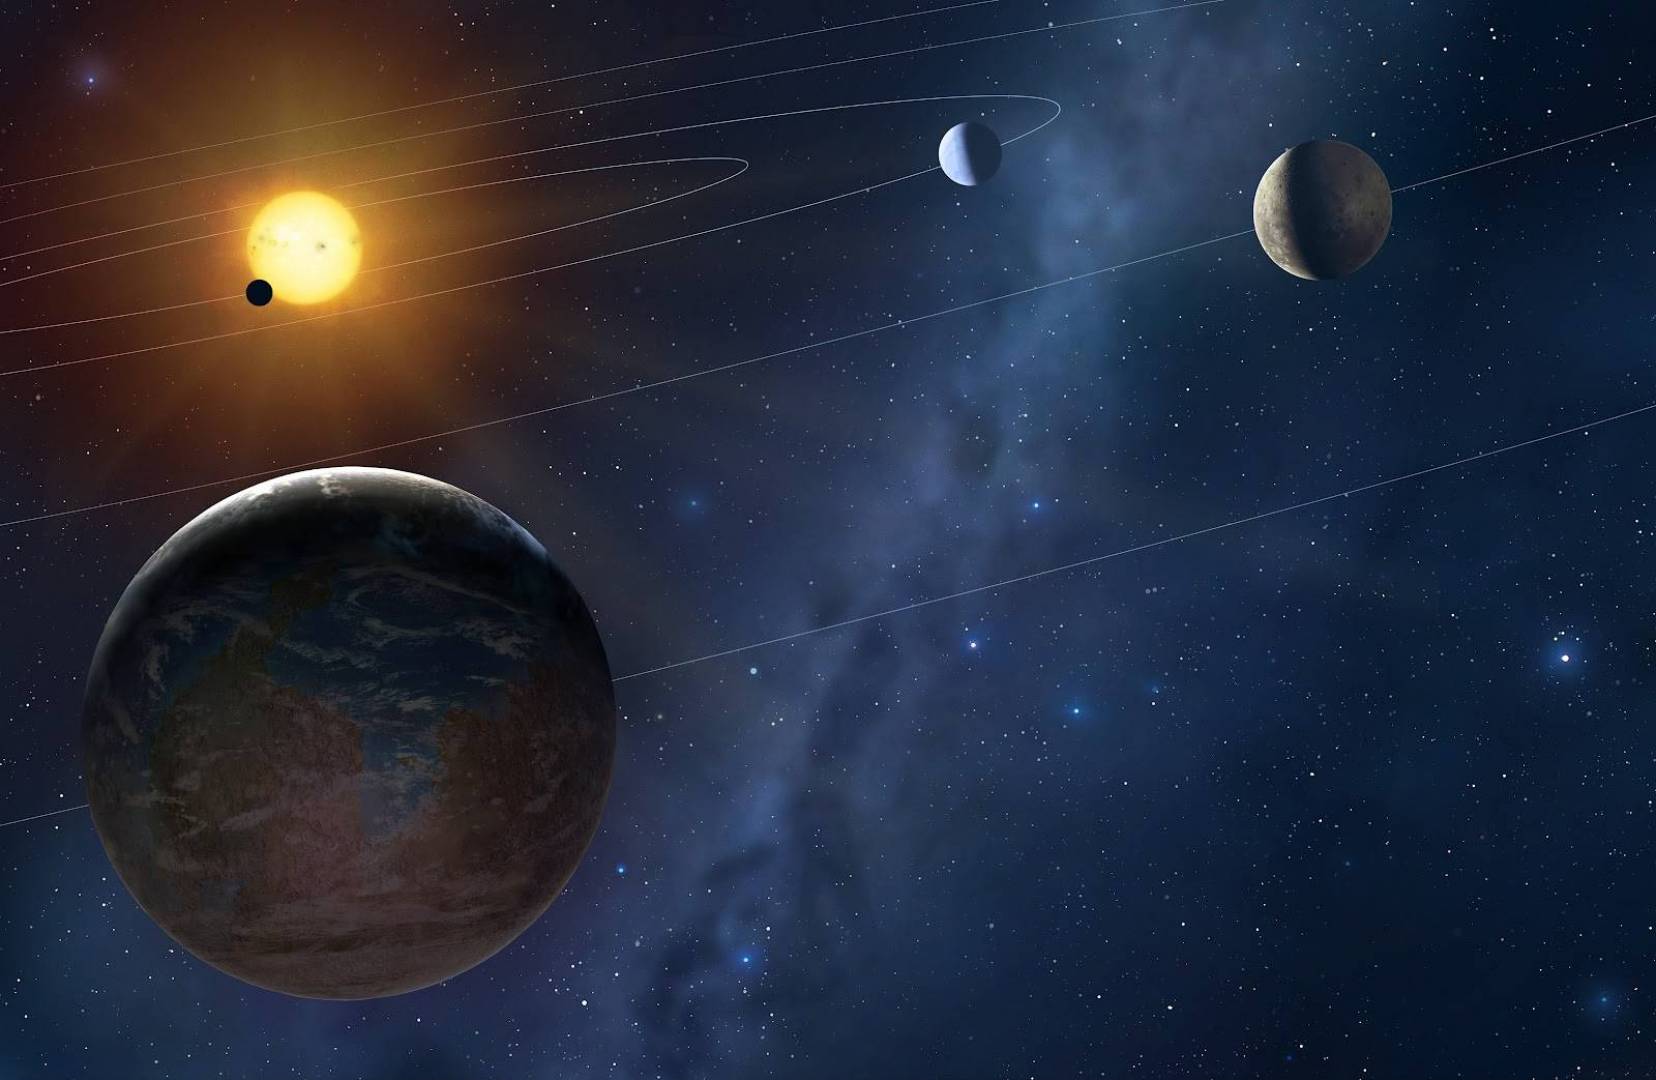 استخدام تلسكوبات راديوية لاكتشاف كواكب جديدة خارج نظامنا الشمسي